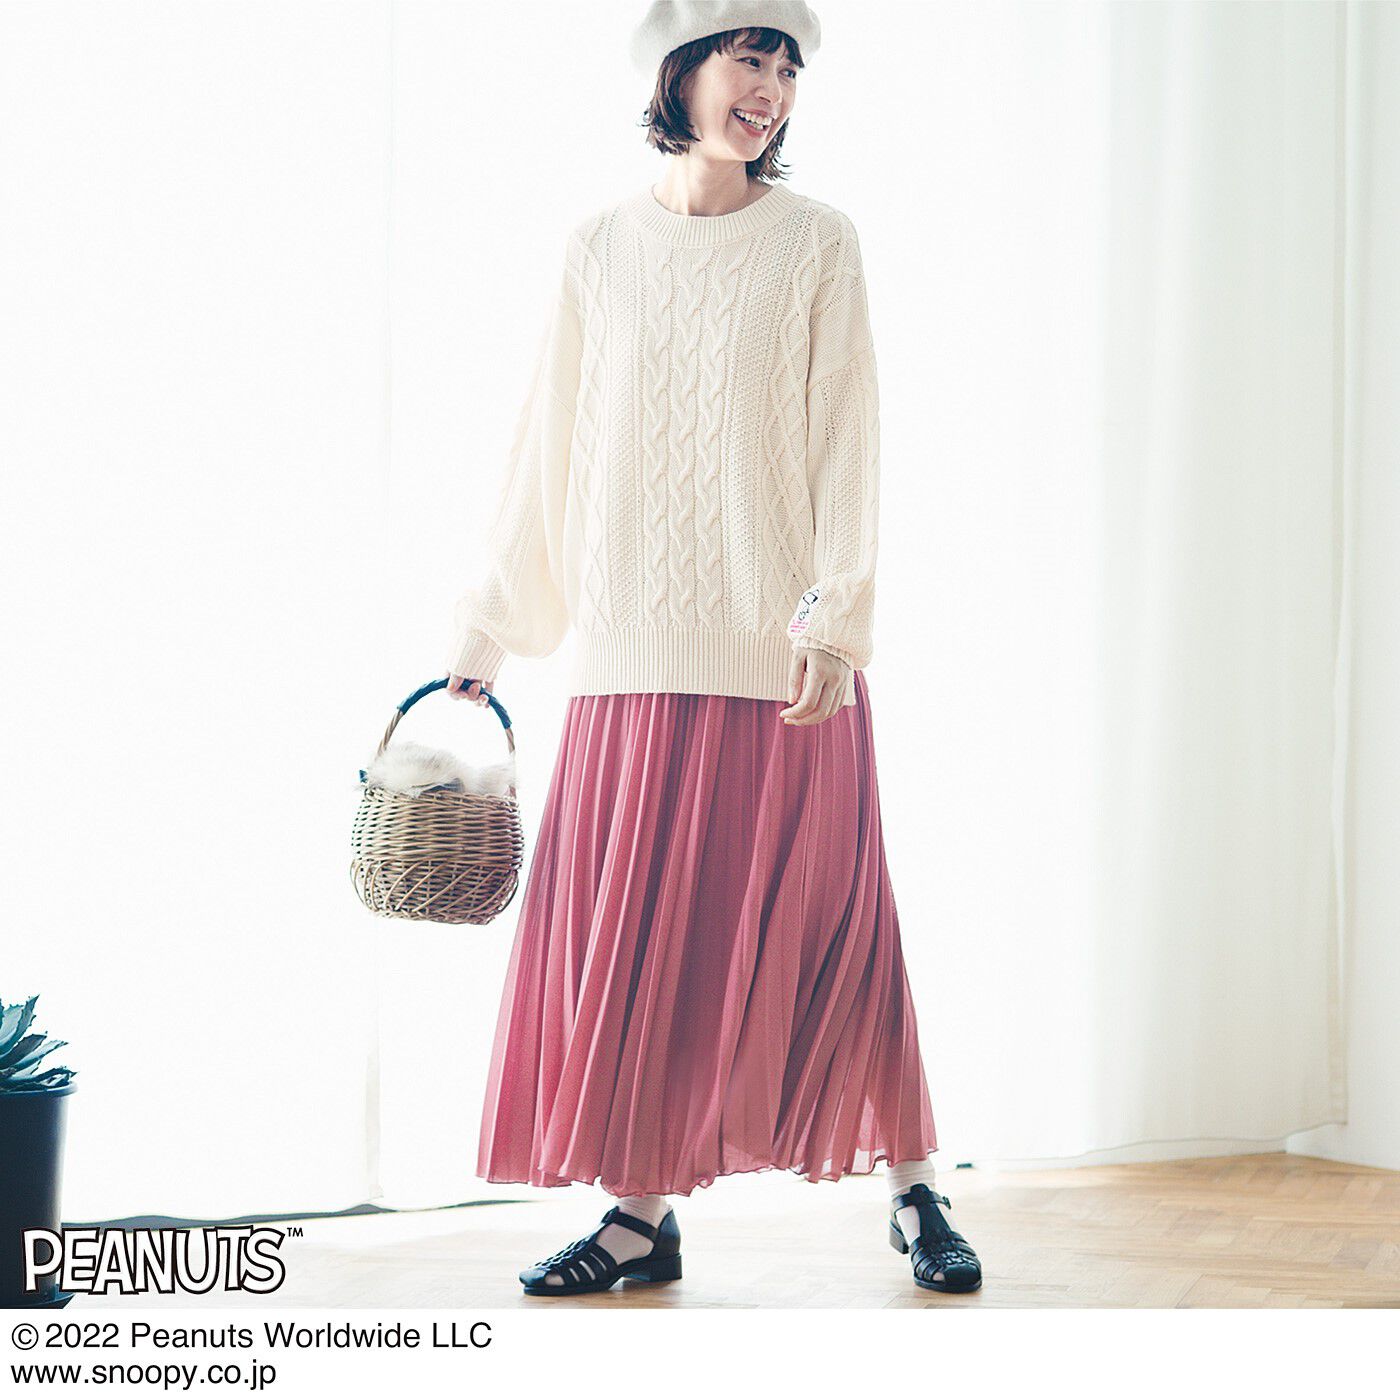 frauglatt|フラウグラット　PEANUTSフレンズ 編み柄ですっきり見え 大人の定番ホワイトニット〈スヌーピー〉|きれい色のスカートと合わせて、お出かけコーデ。